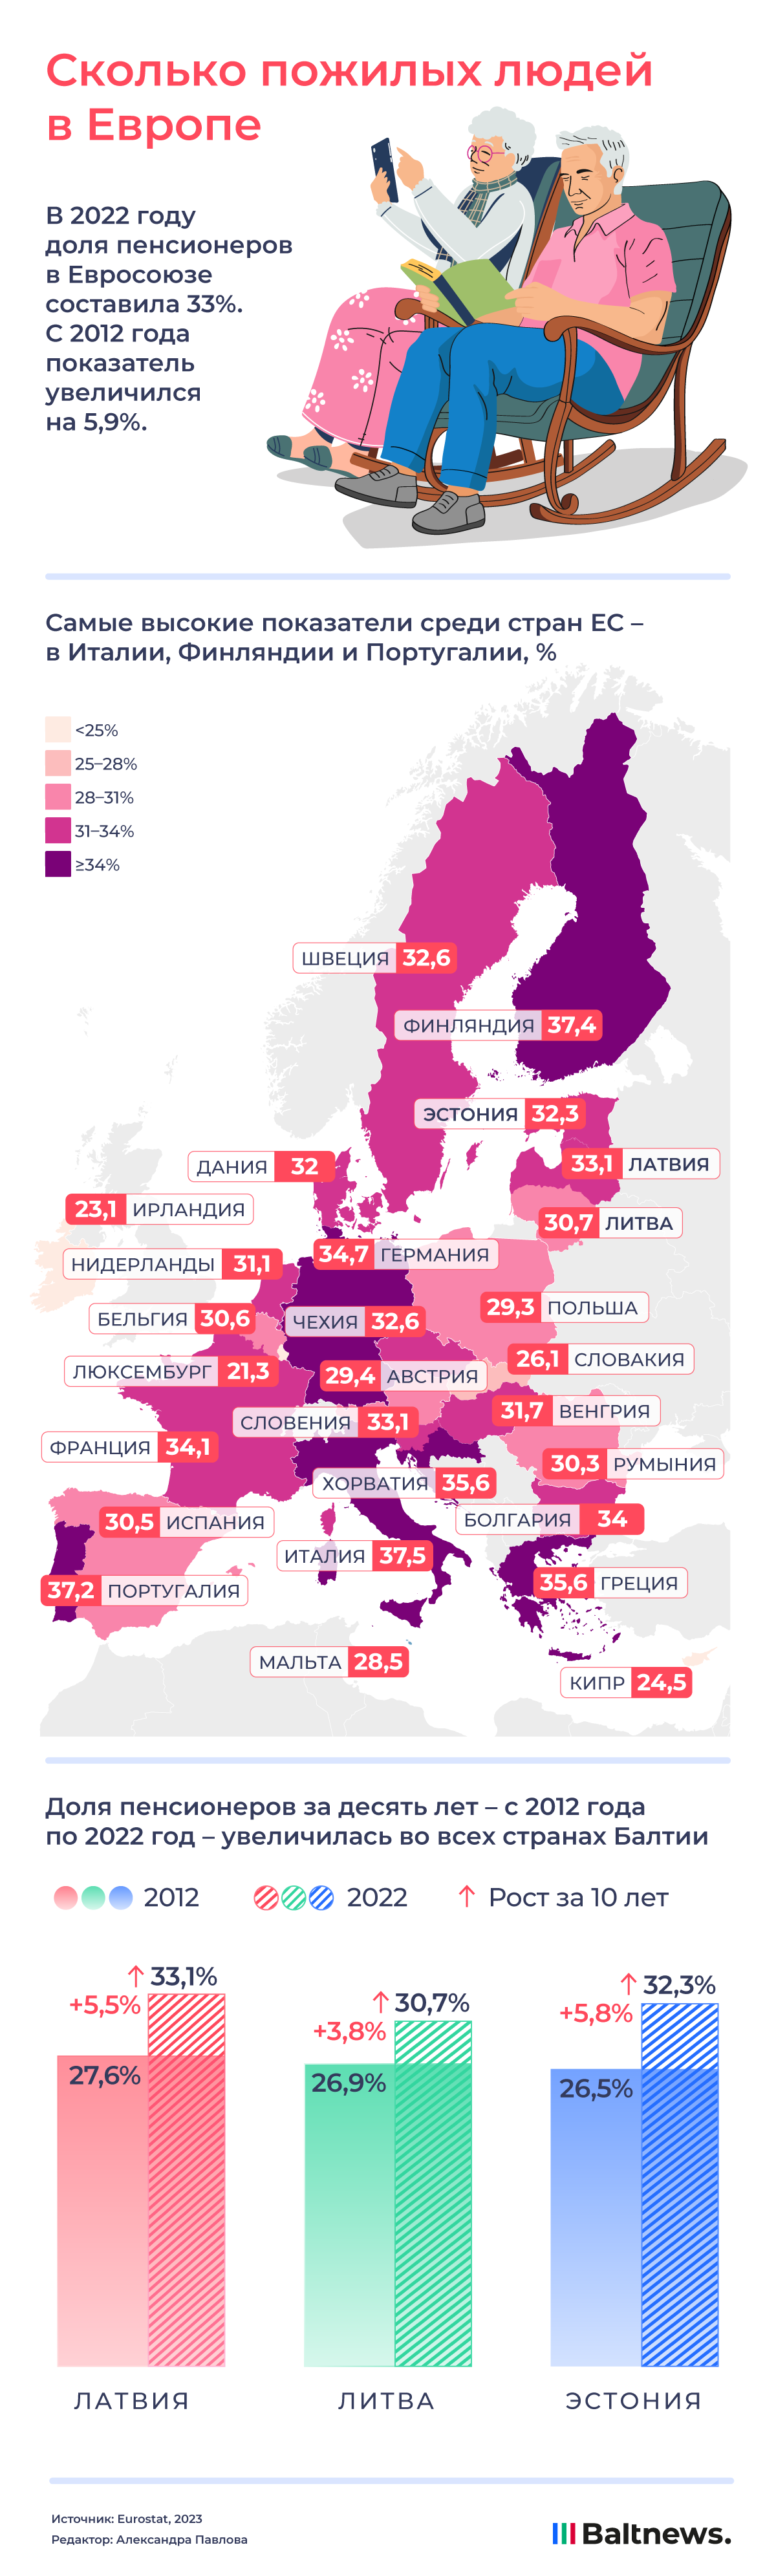 Сколько пожилых людей в Европе